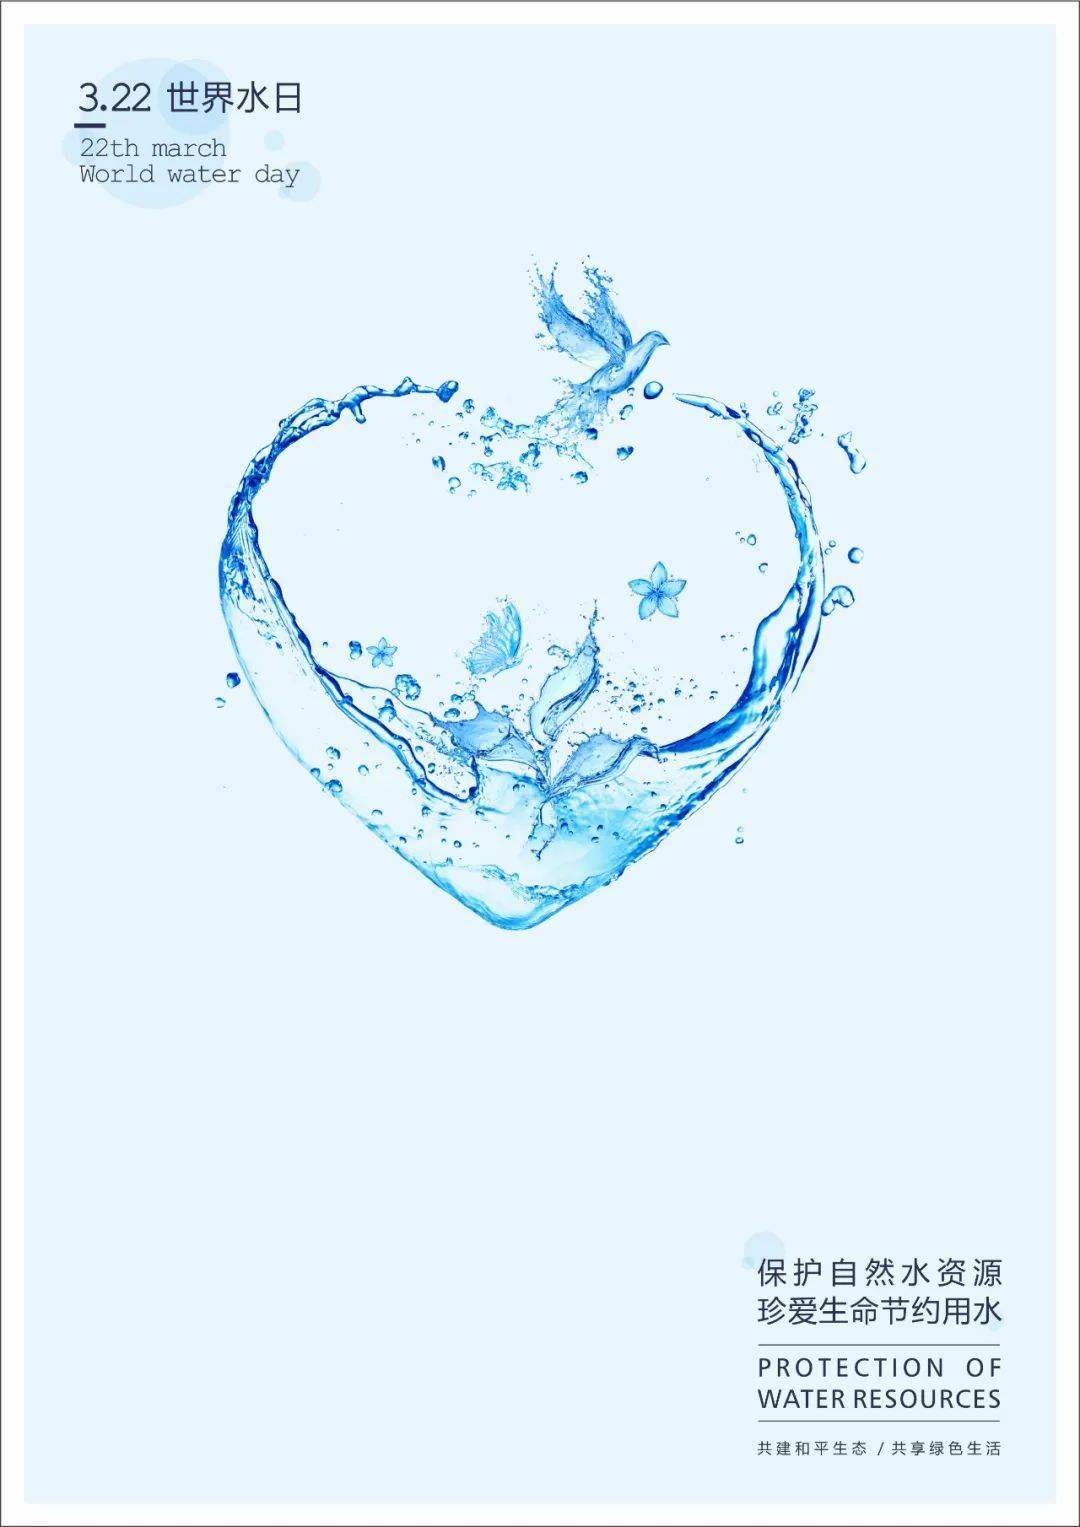 用水】节水宣传作品展示:《保护自然水资源 珍爱生命节约用水》海报